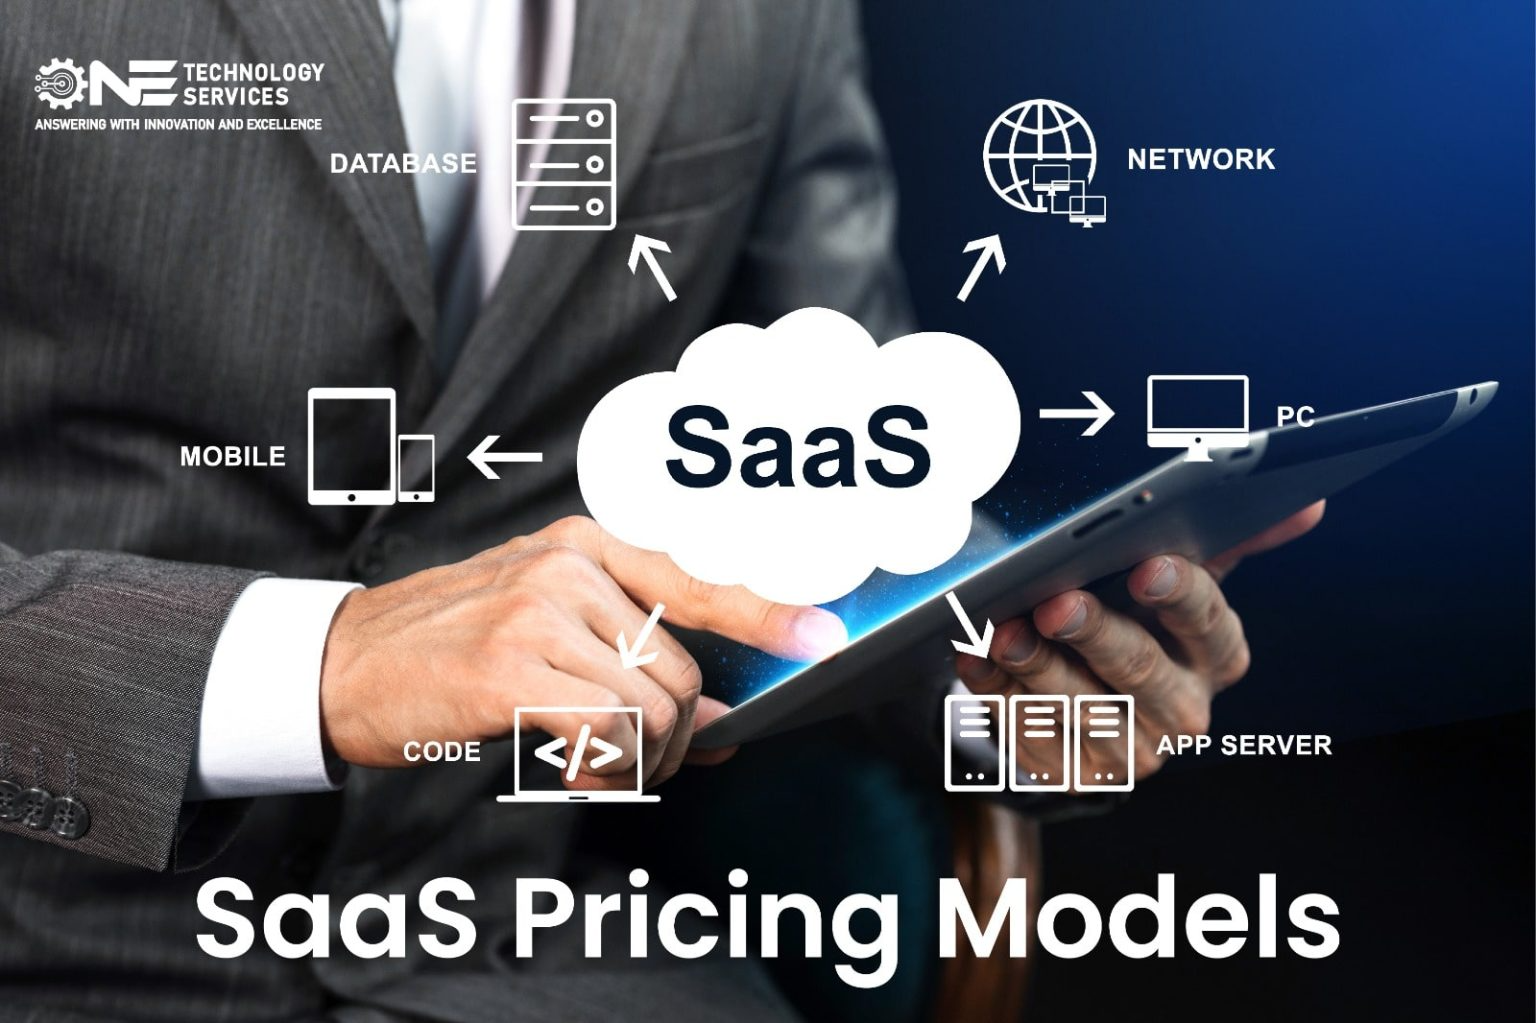 SaaS pricing models